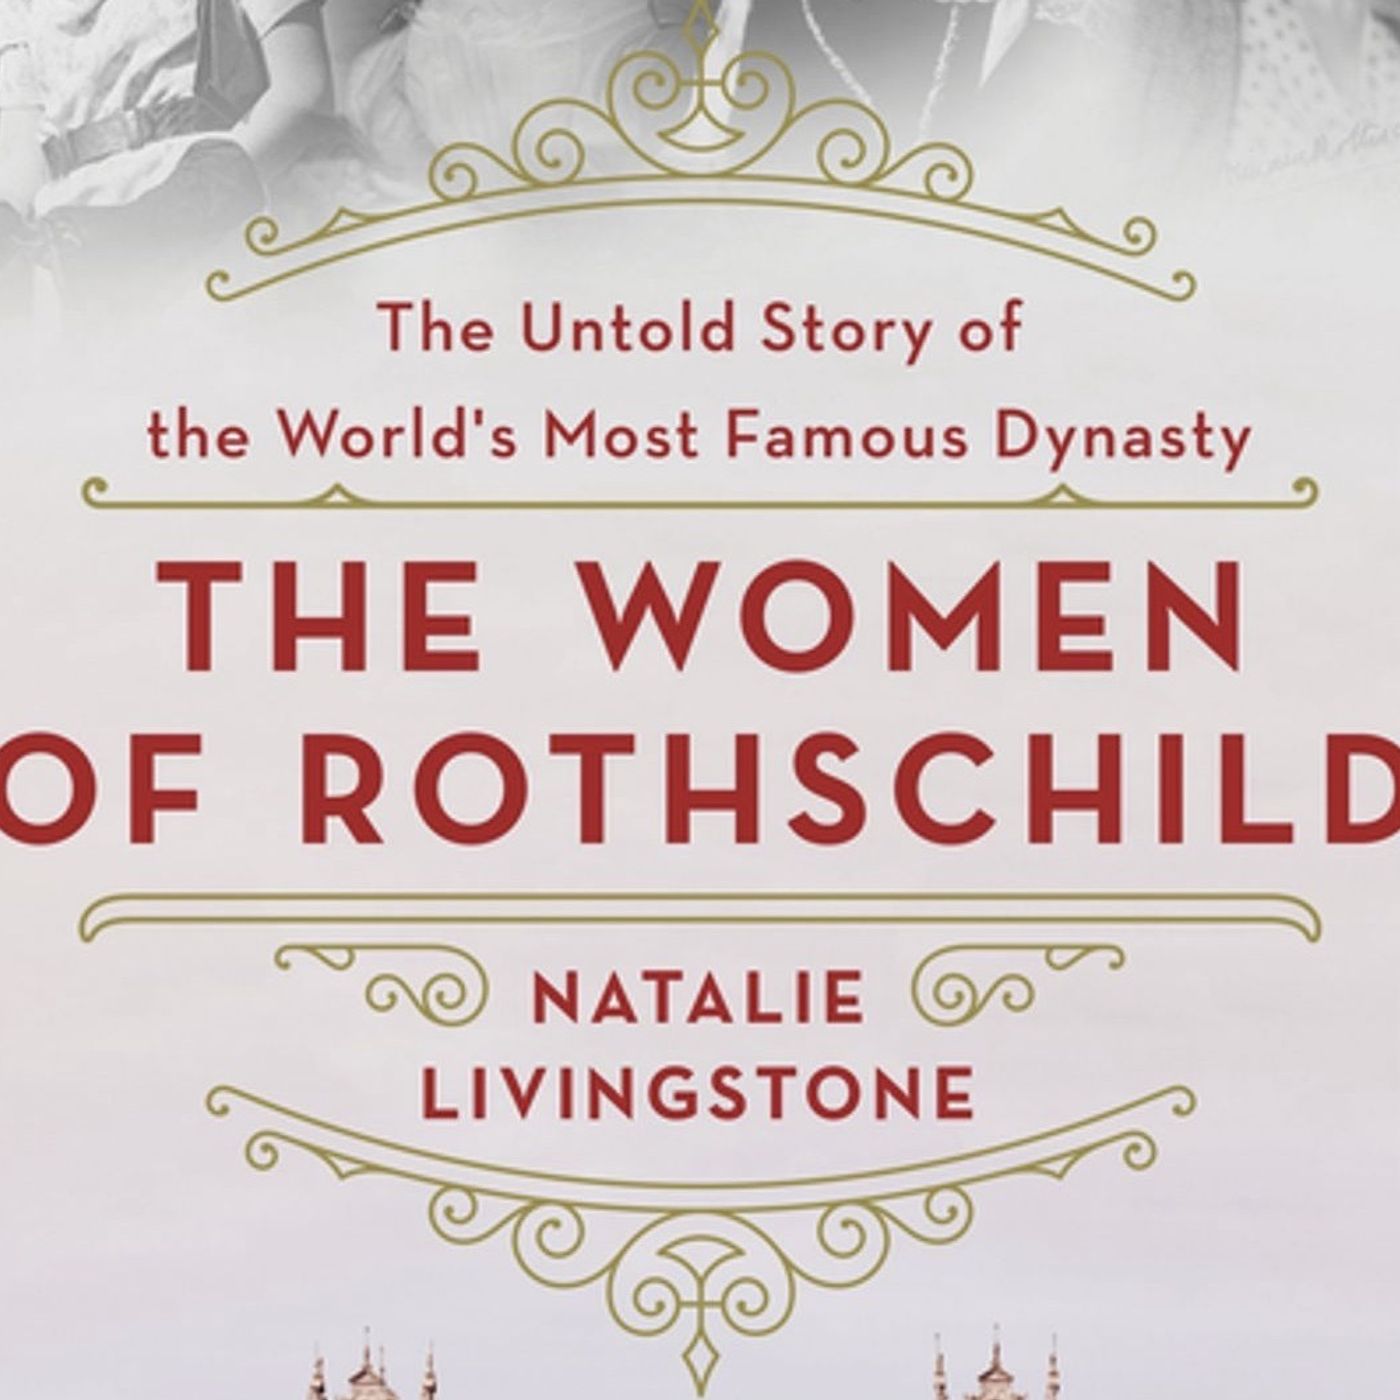 Natalie Livingstone: The Women of Rothschild